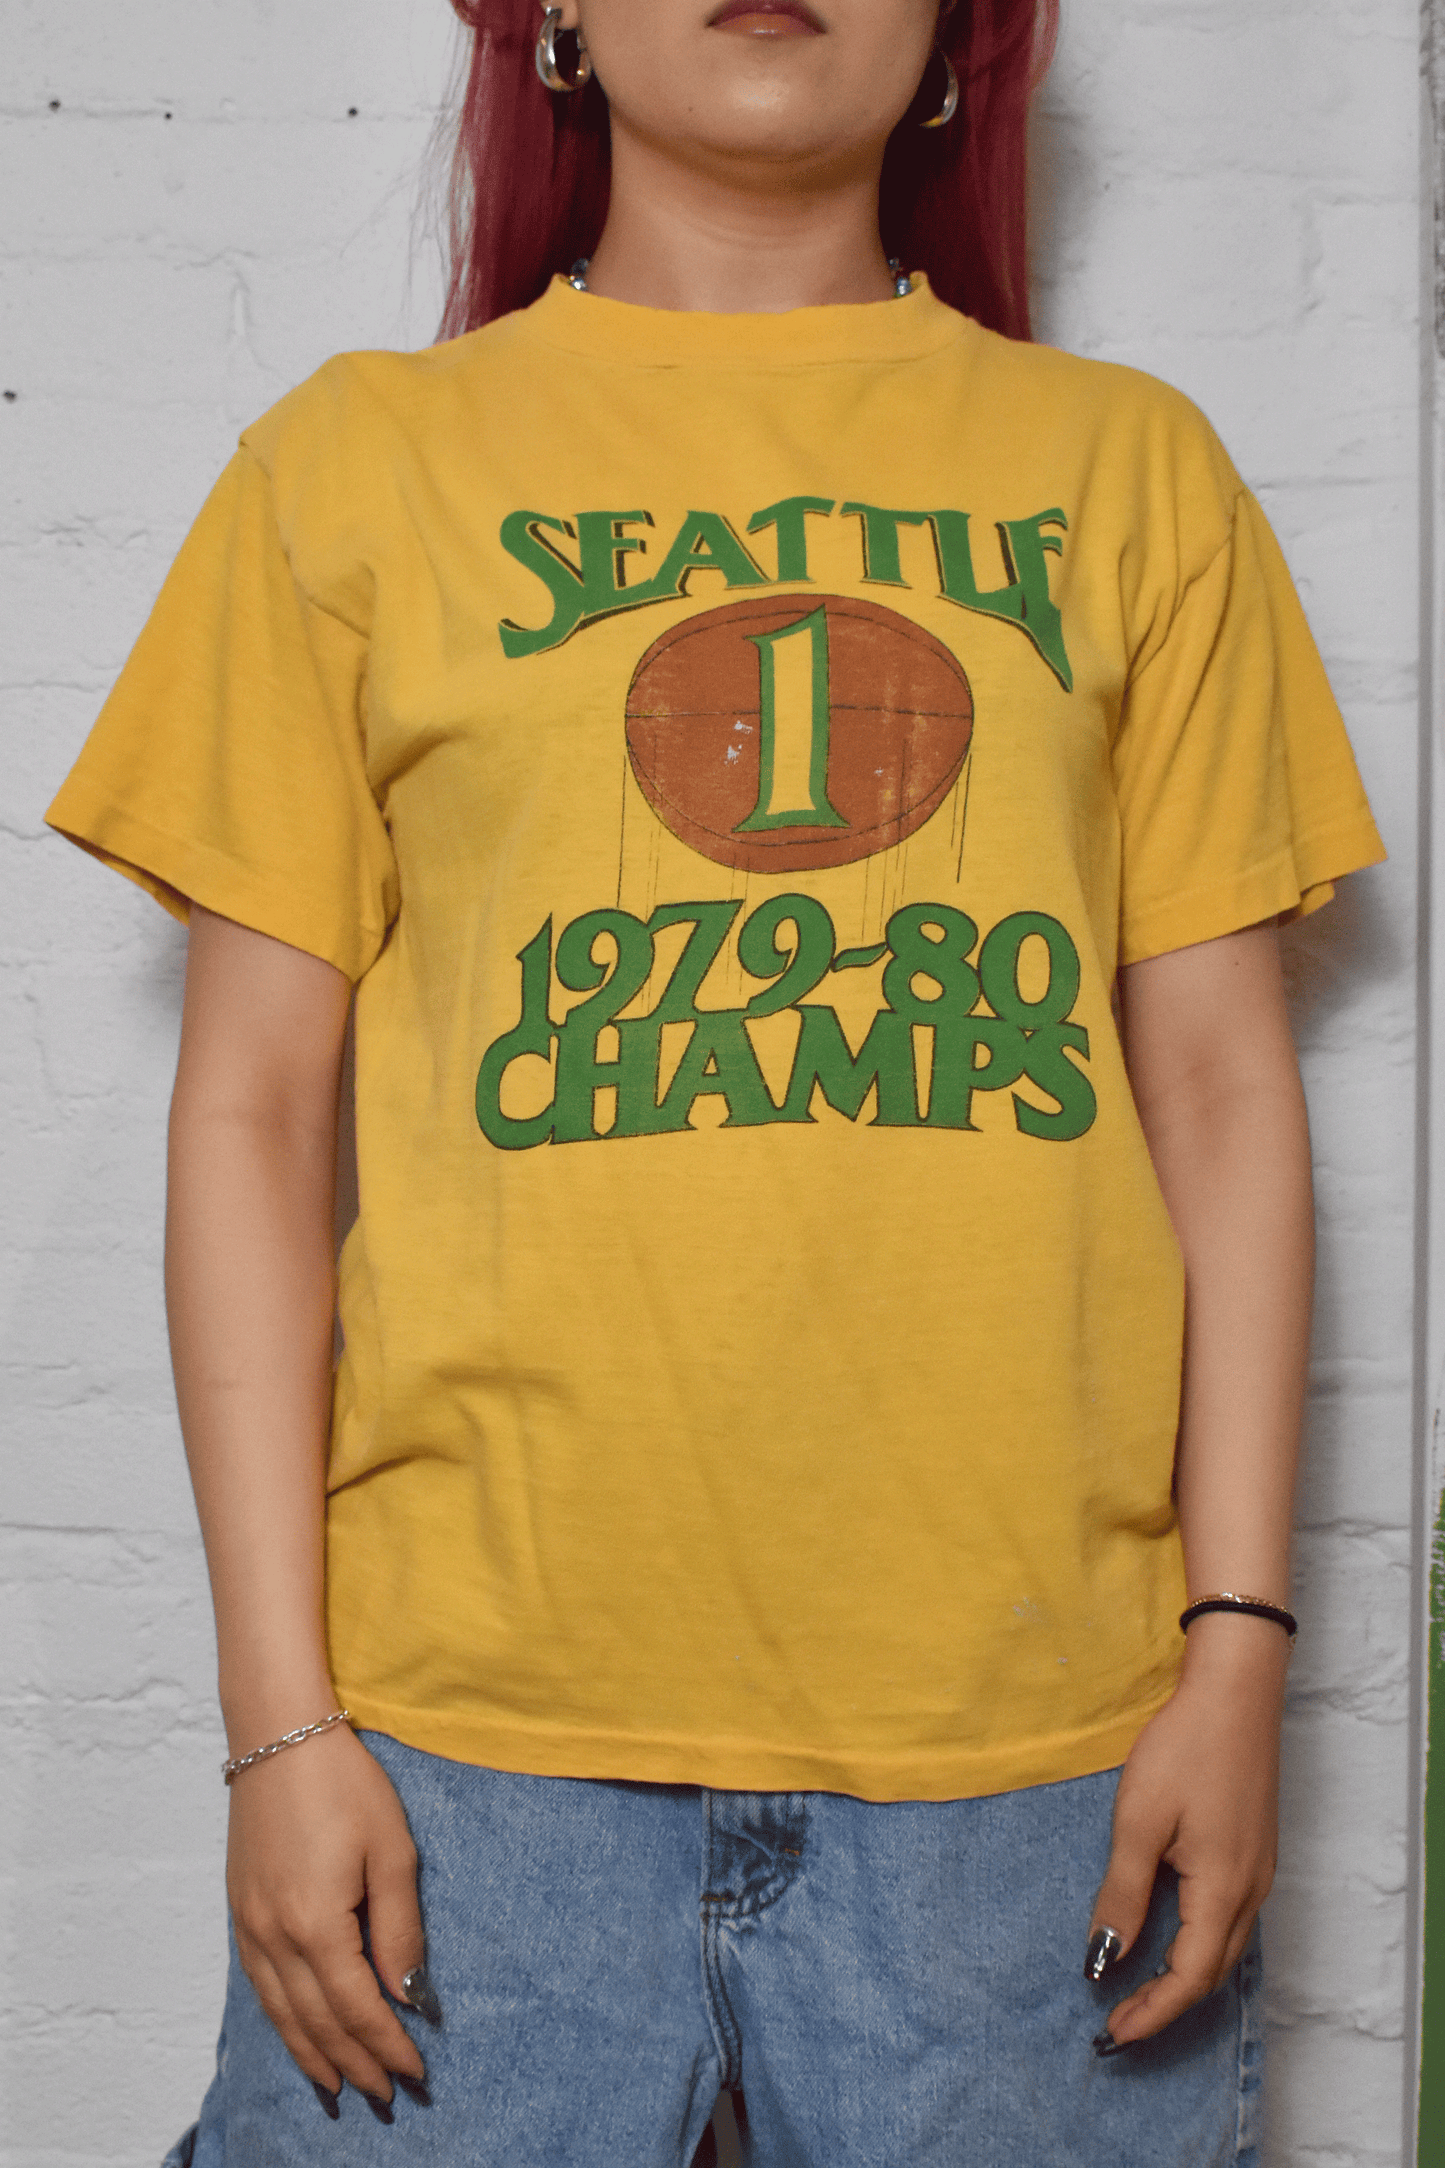 Vintage 1979/80 Seattle Sonics Champs T-shirt